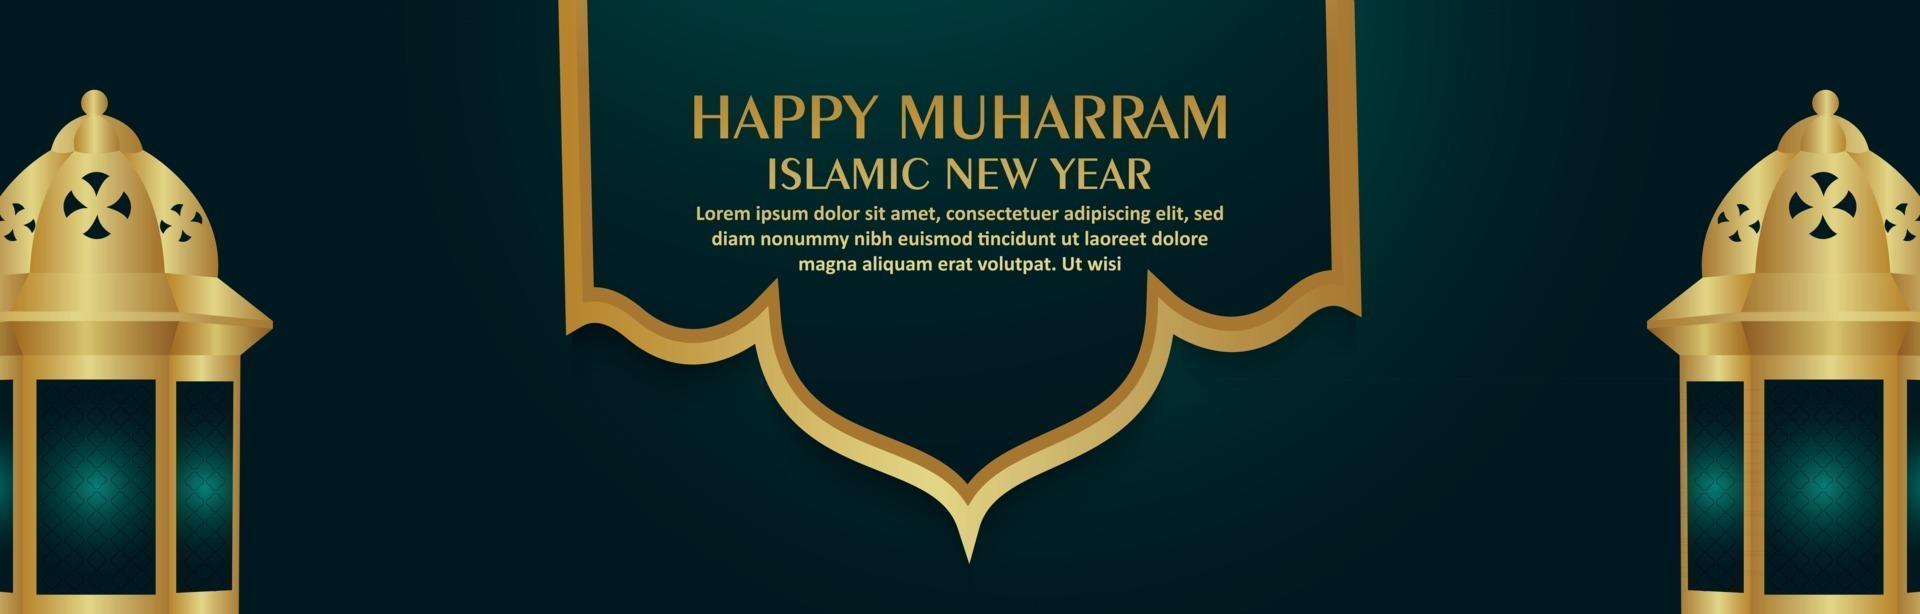 islamiskt nyårsfirande realistisk banner med gyllene lykta vektor